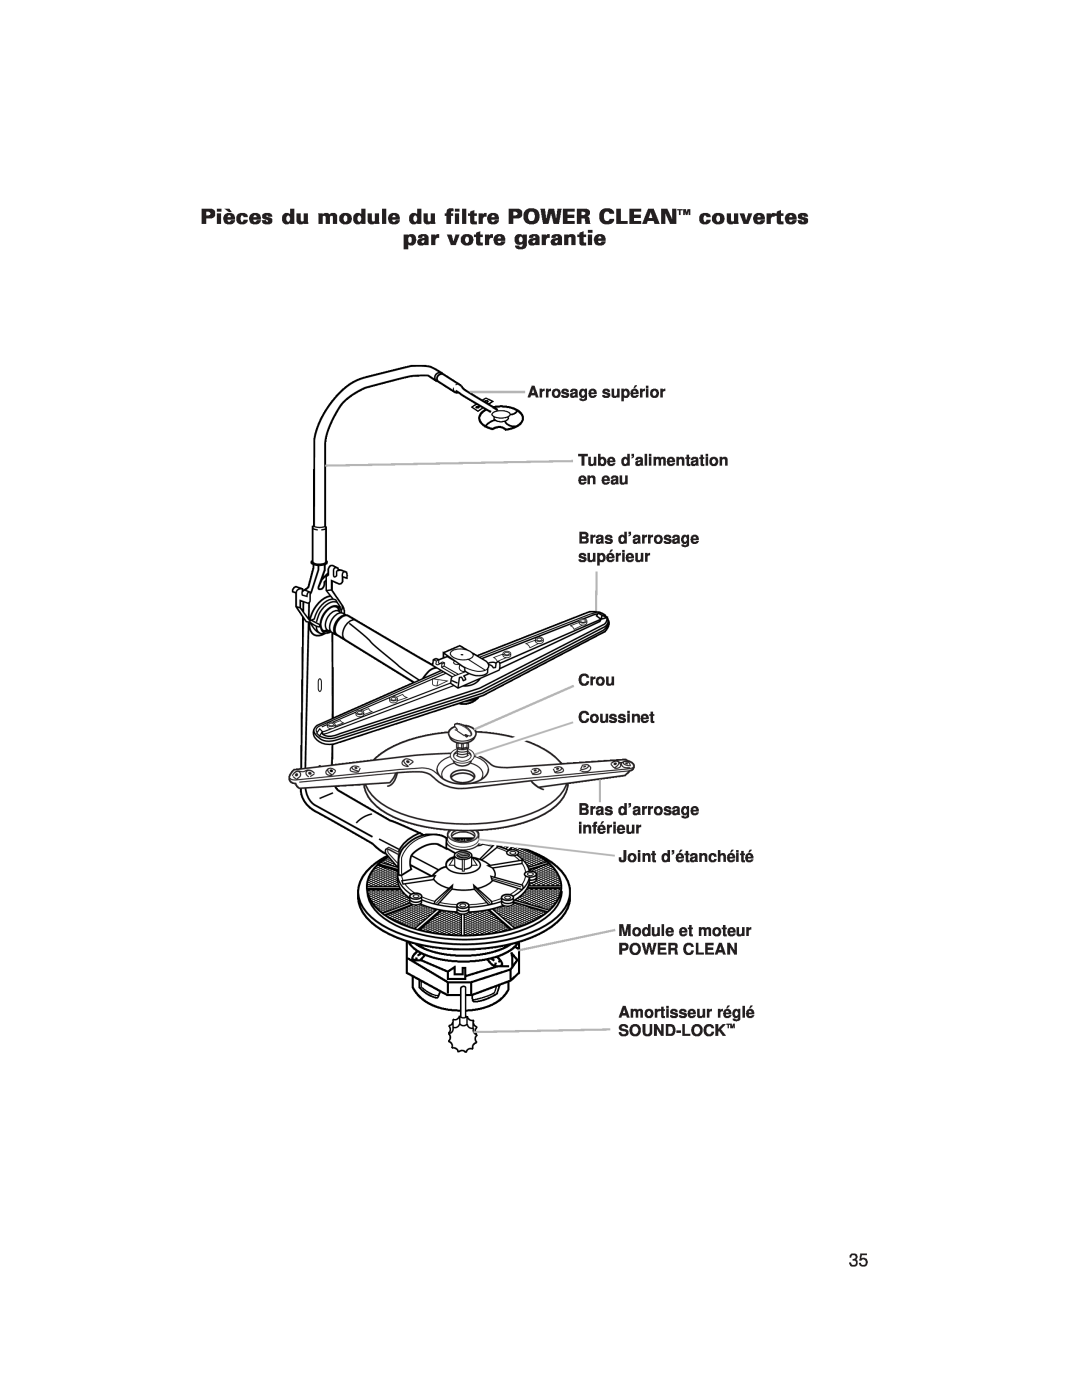 Whirlpool 980 par votre garantie, Arrosage supérior Tube d’alimentation en eau, Bras d’arrosage supérieur Crou Coussinet 